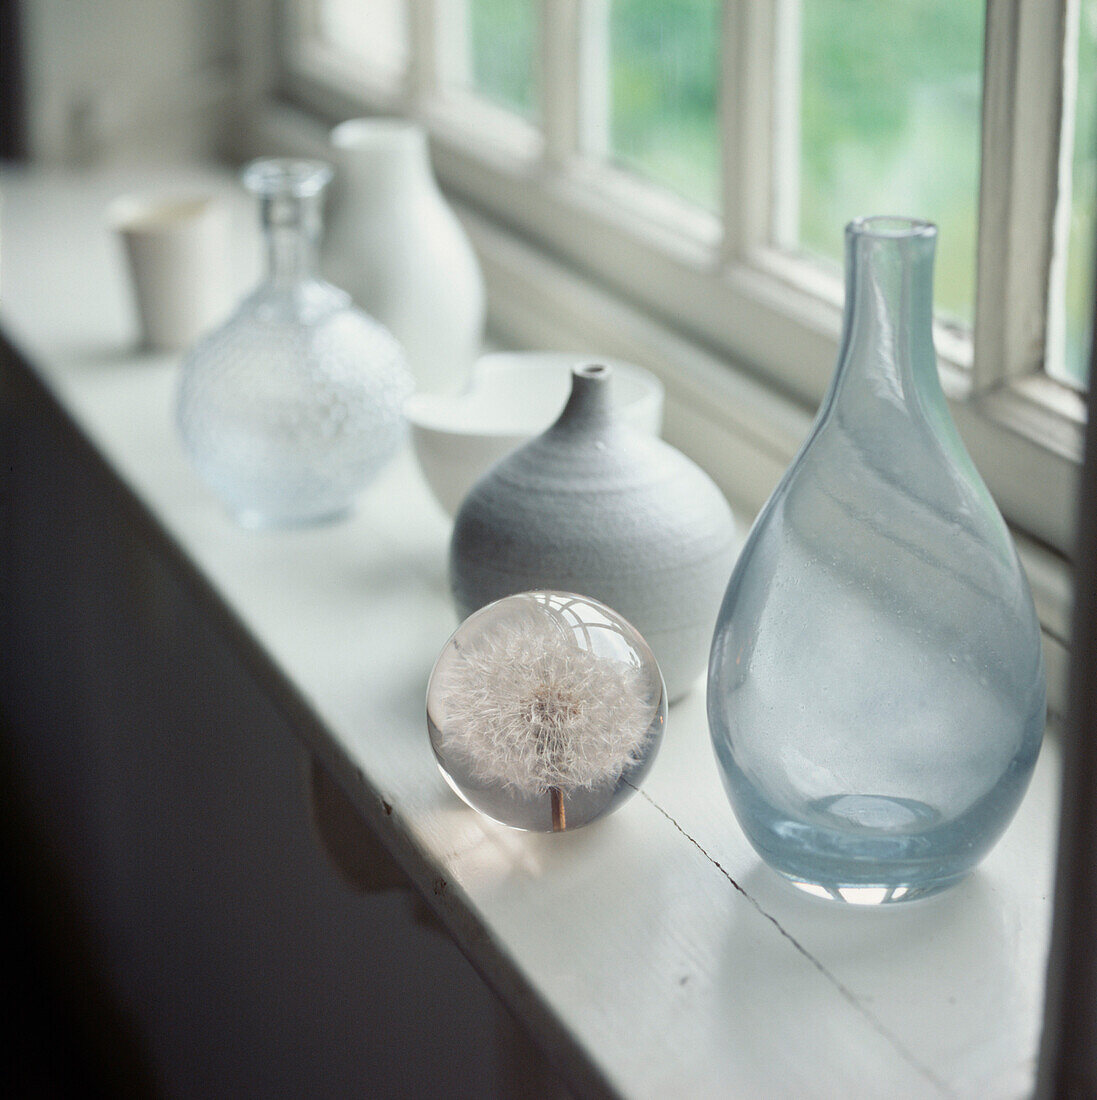 Sammlung von Haushaltswaren aus Glas und Keramik auf einer Fensterbank